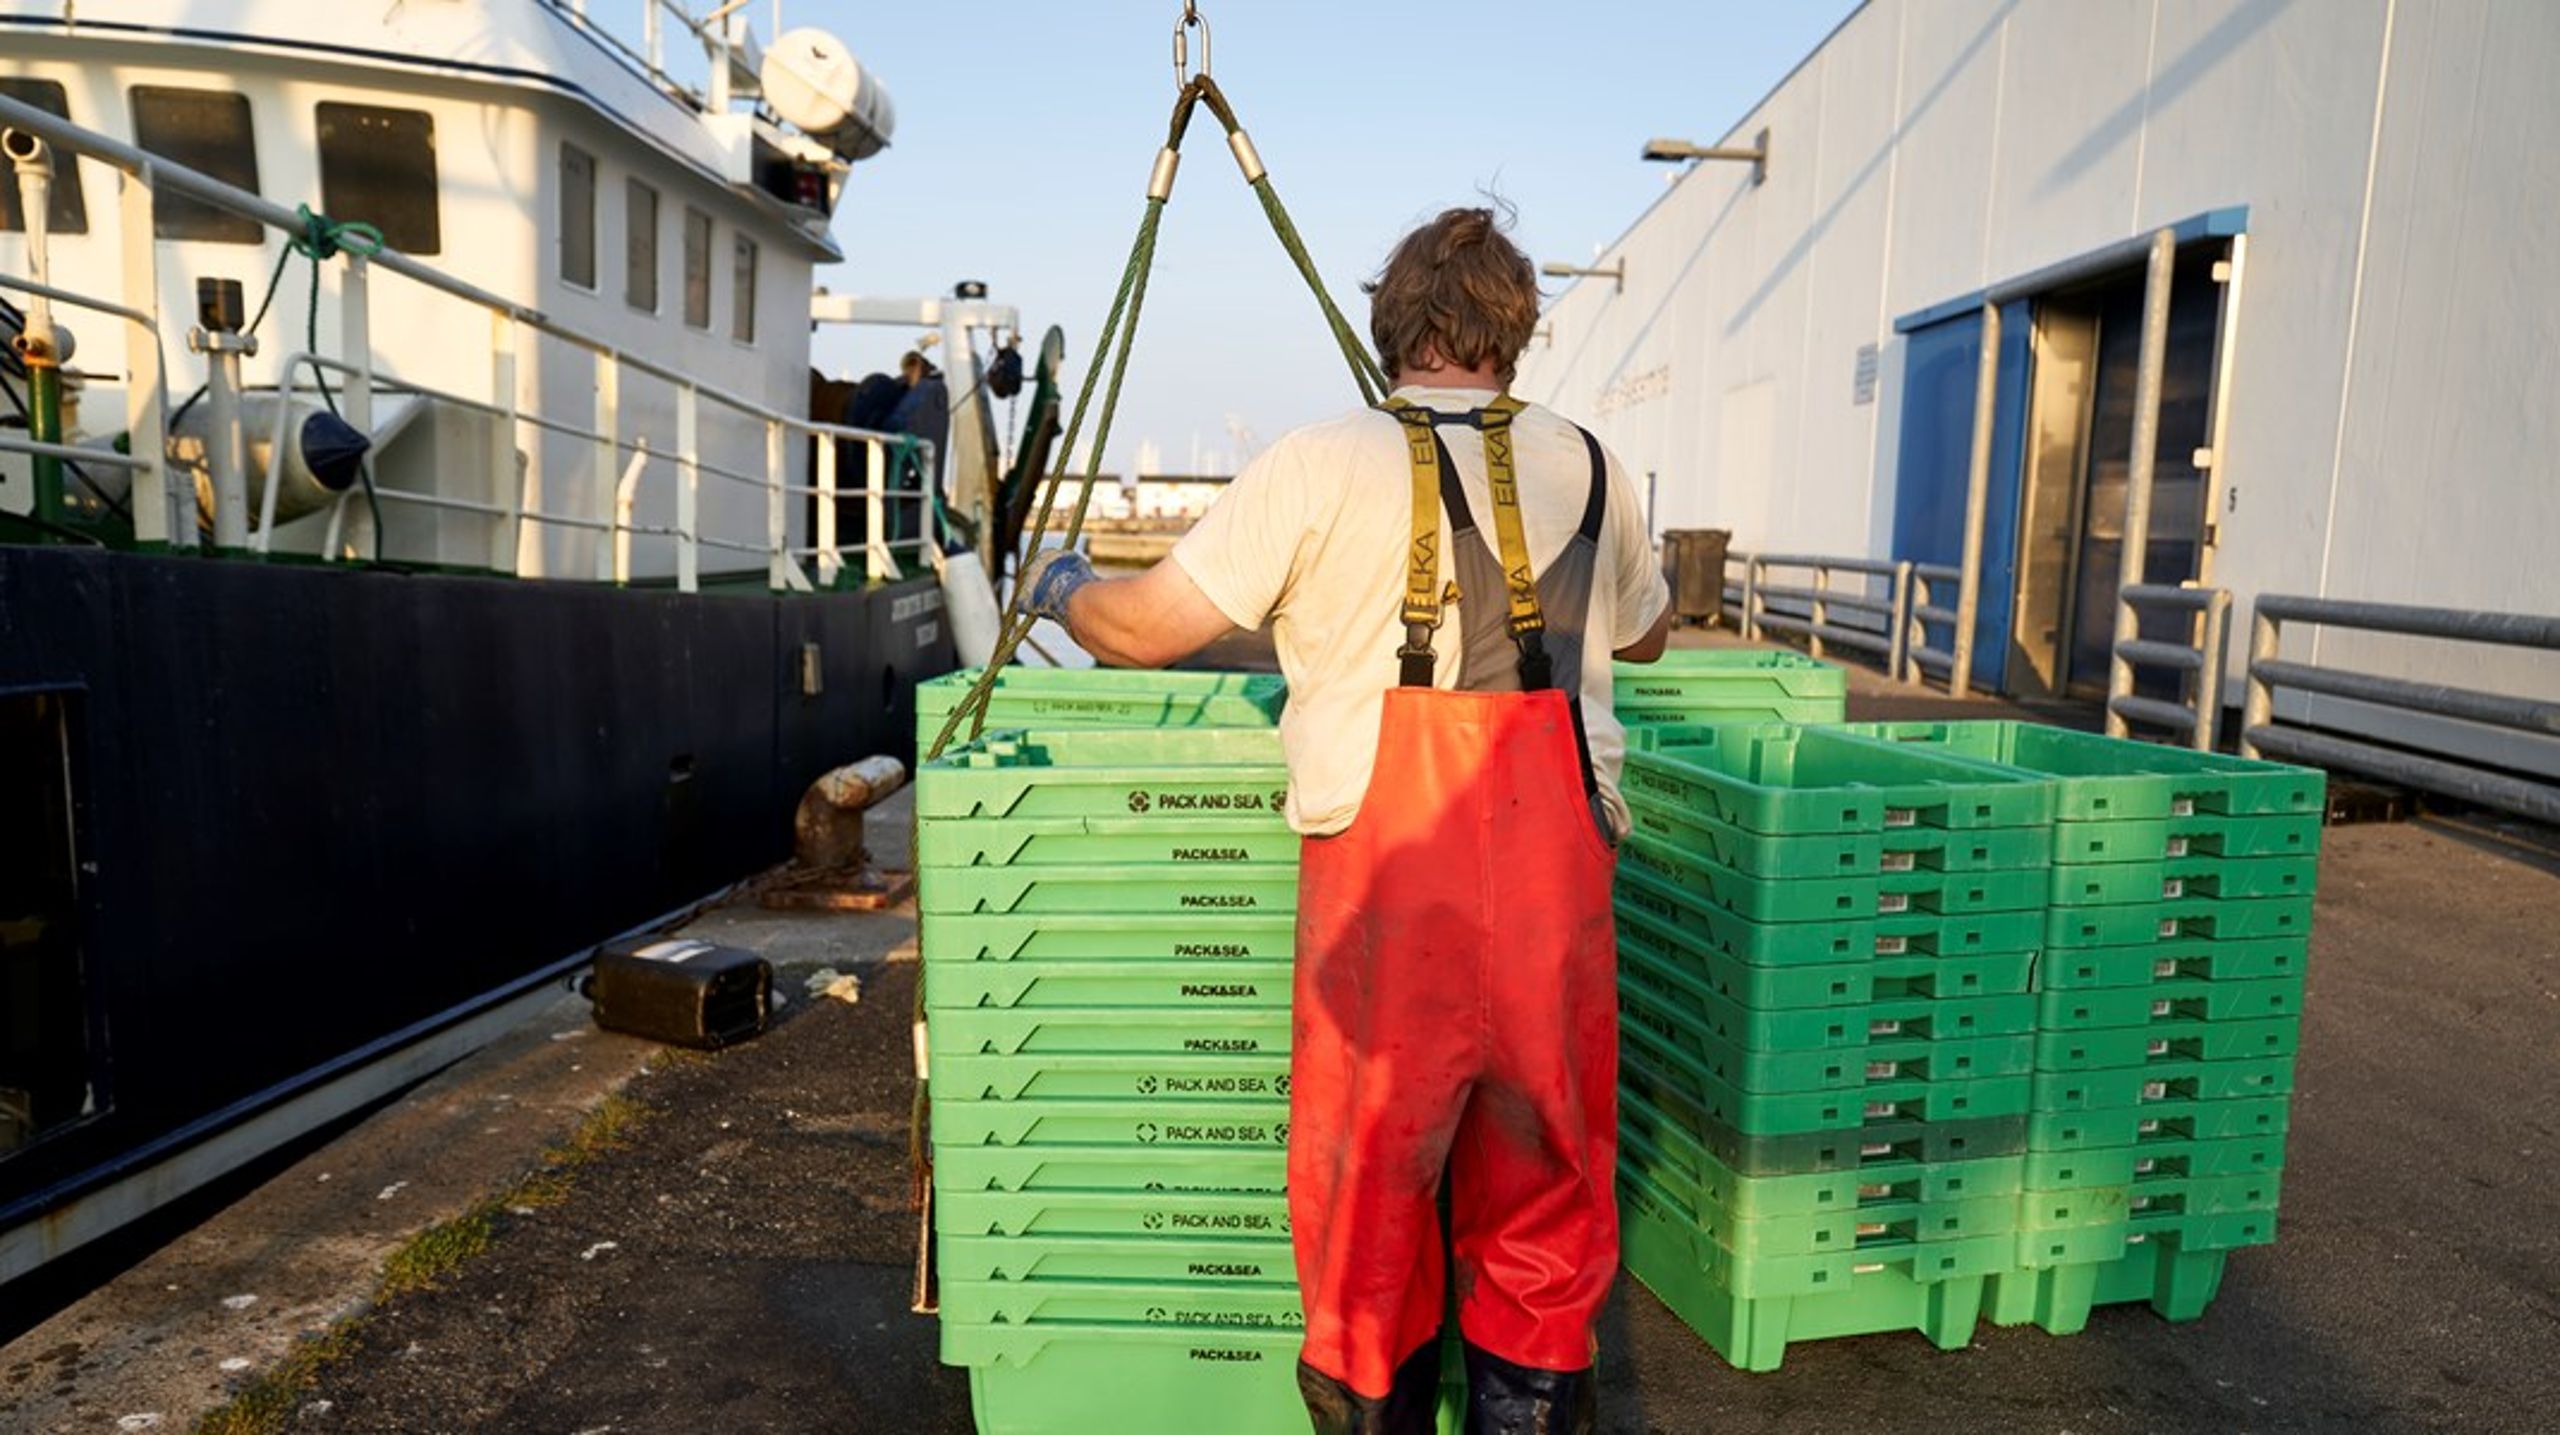 Jo før eventuelle nye krav kan komme på plads, desto bedre er fiskernes muligheder for at tilpasse sig kravene, så fiskeriet kan fortsætte ved årsskiftet, skriver Svend-Erik Andersen.